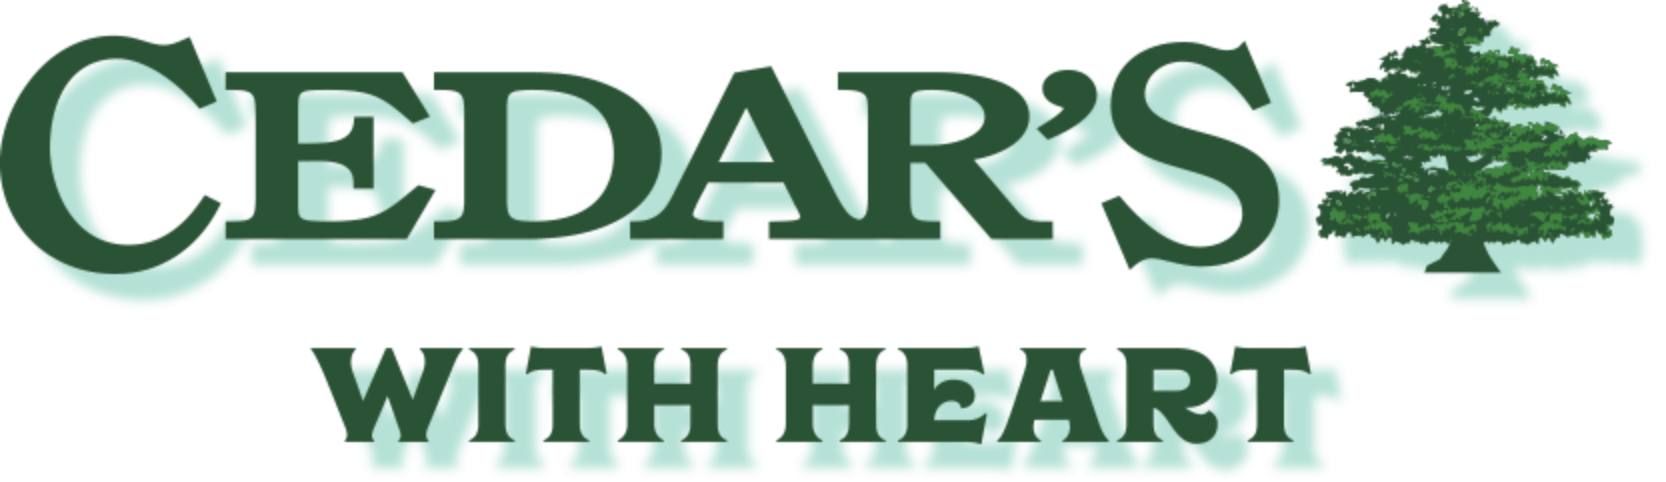 Cedars With Heart Logo